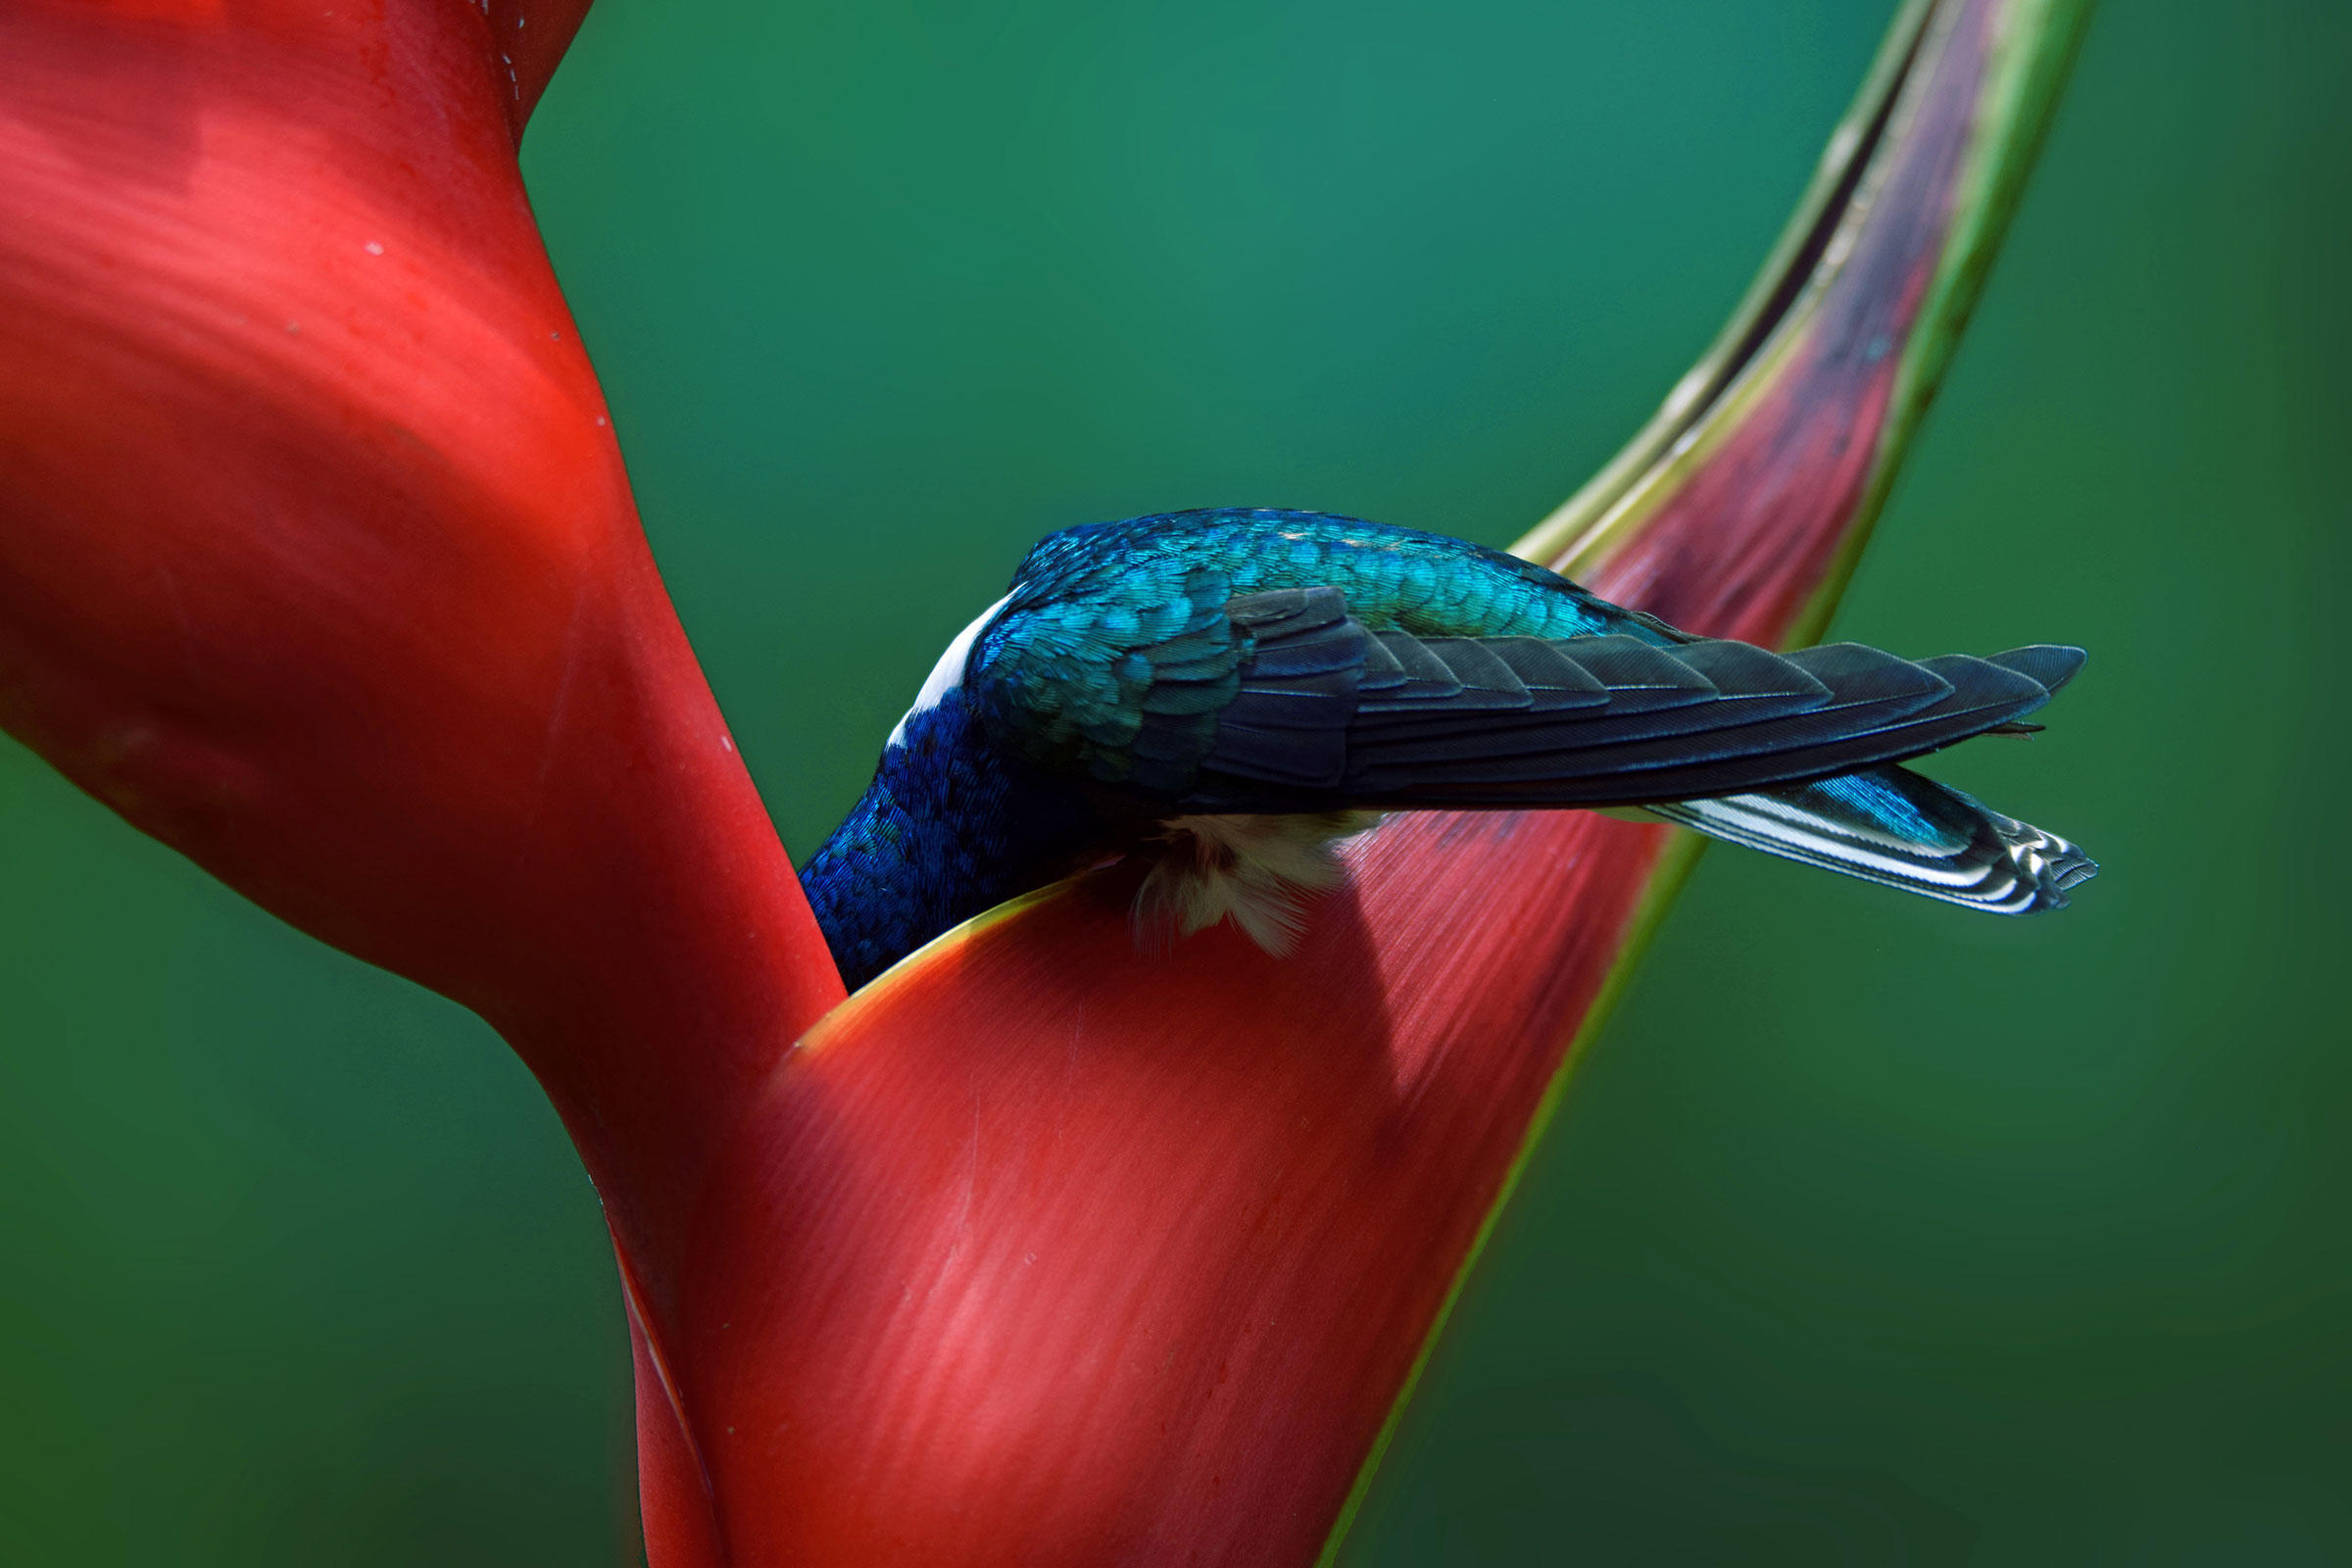 Фото птицы колибри сделано в природном парке в Коста-Рике. Из более чем 350 видов колибри большинство имеют небольшие географические ареалы. Колибри-якобин распространен от южной Мексики до южной Бразилии. Фото: Mariam Kamal/Audubon Photography Awards